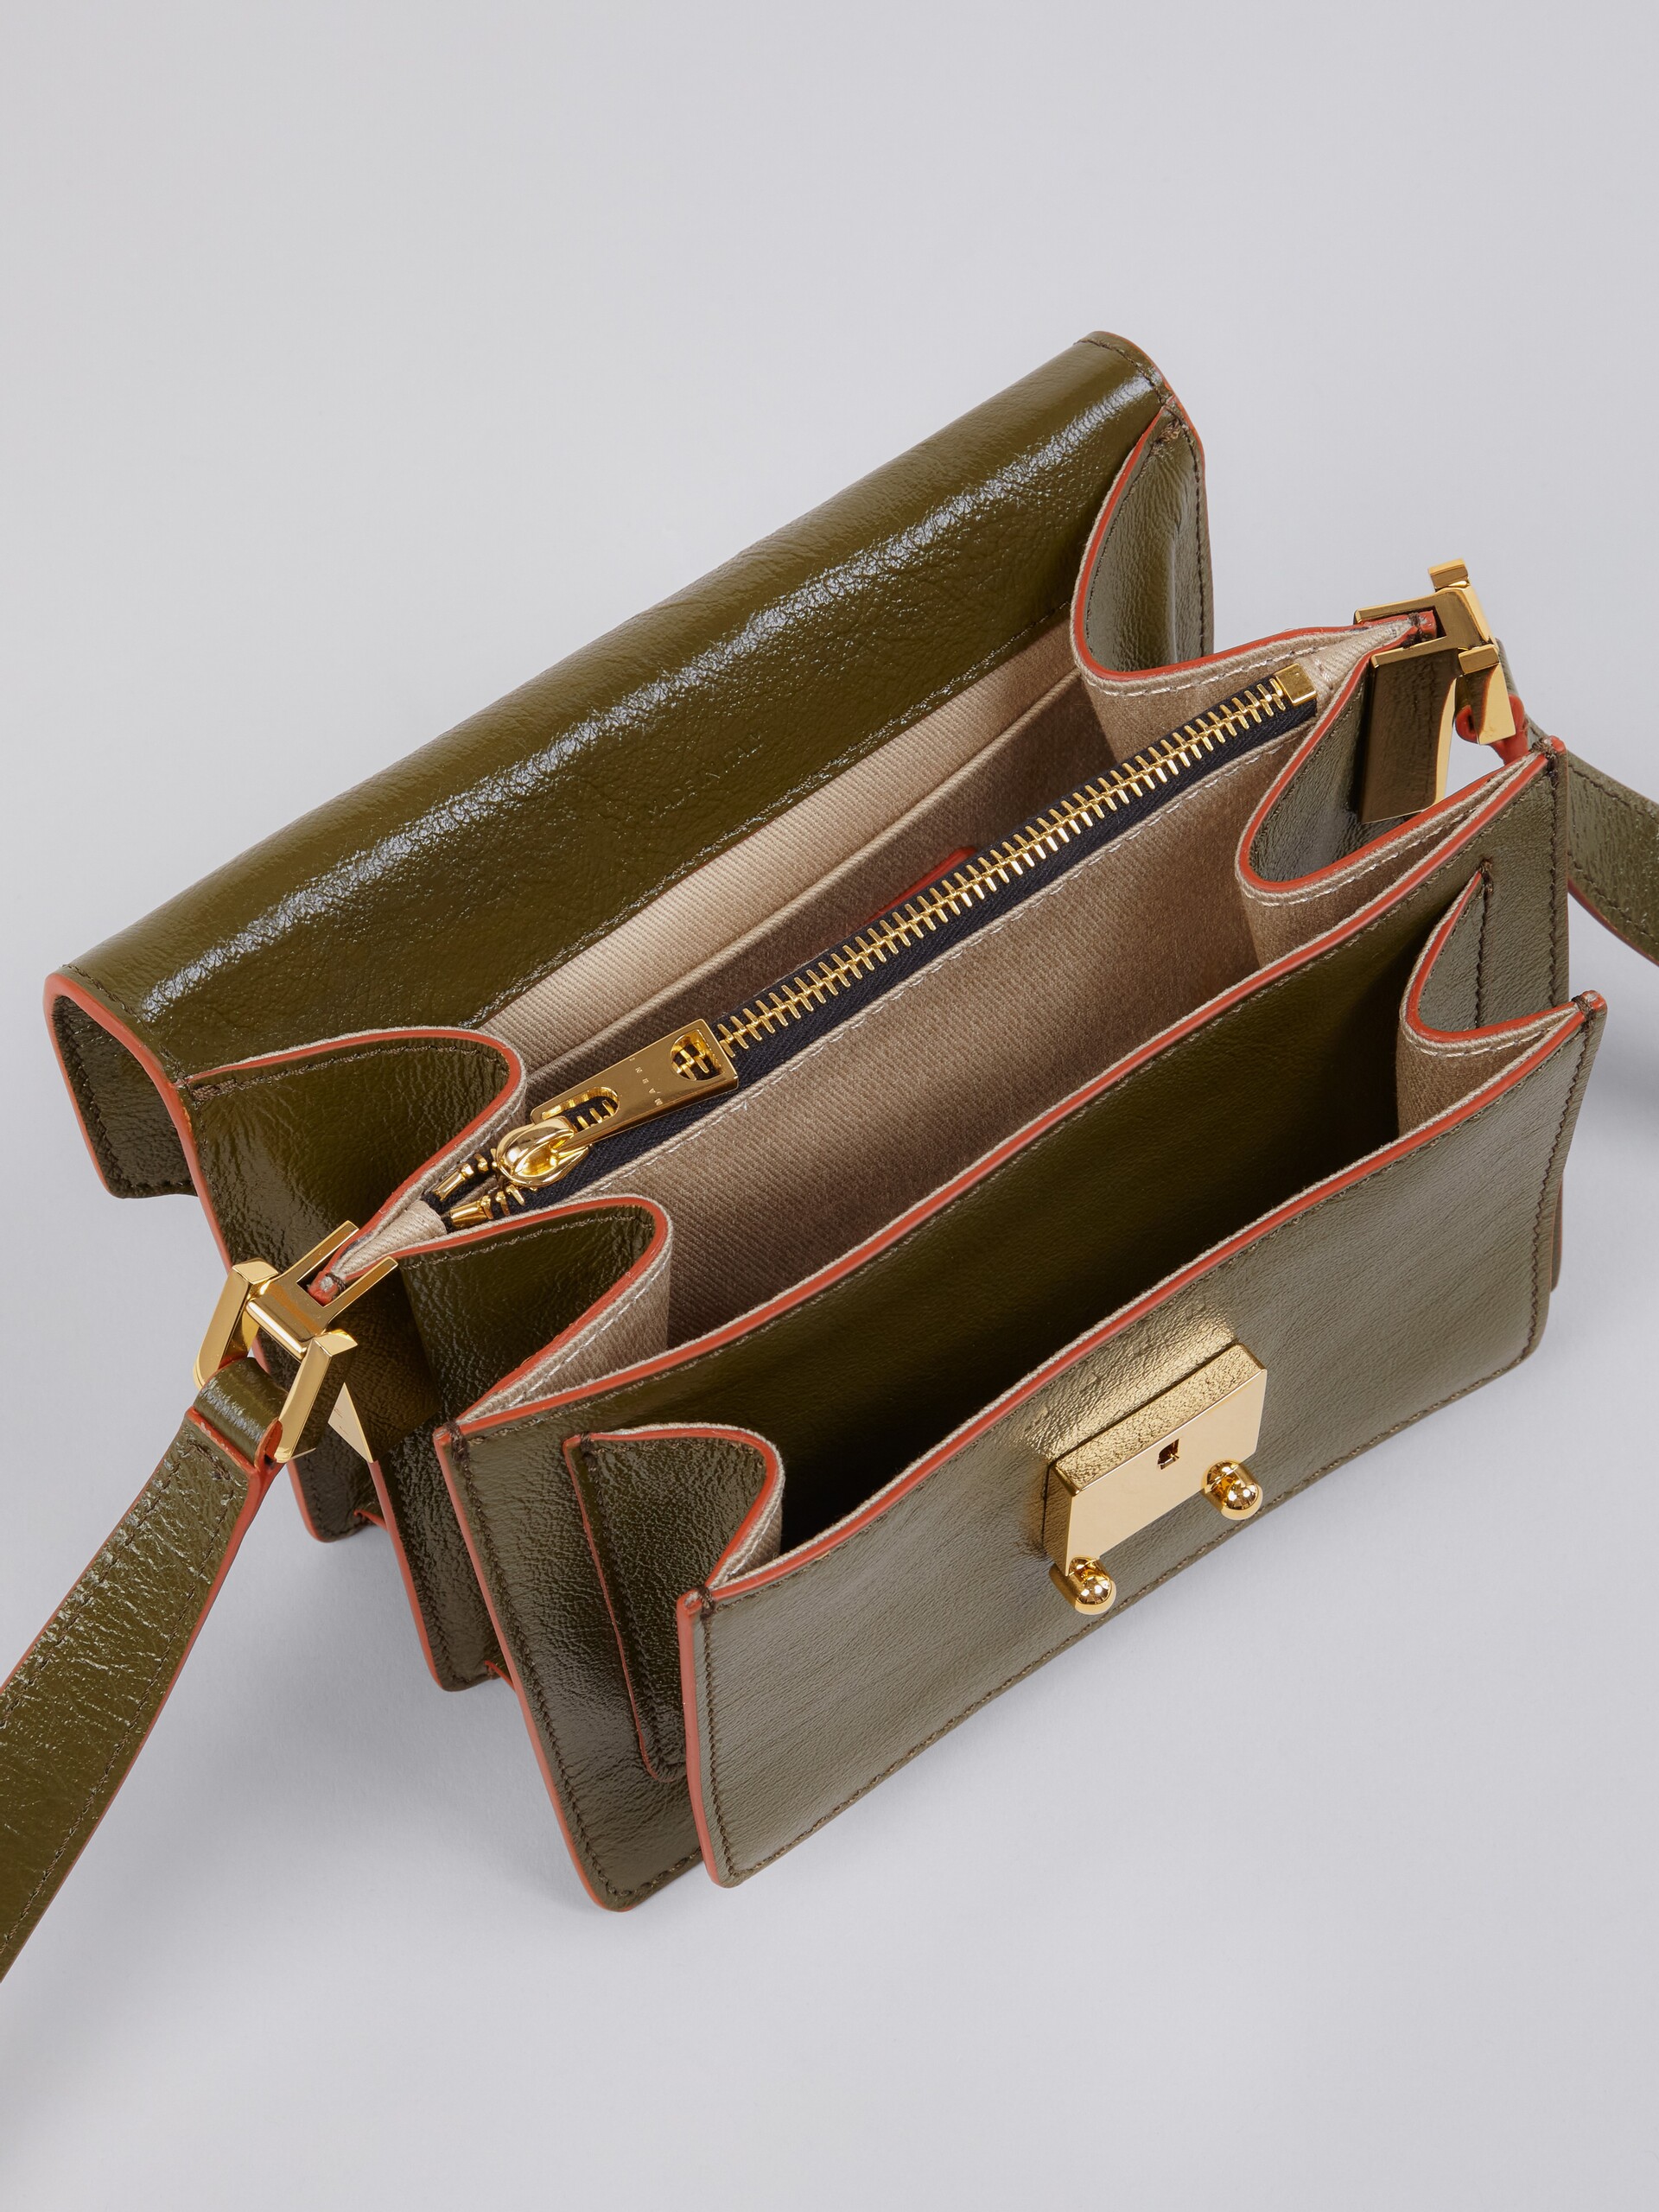 TRUNK SOFT bag mini in pelle verde - Borse a spalla - Image 3